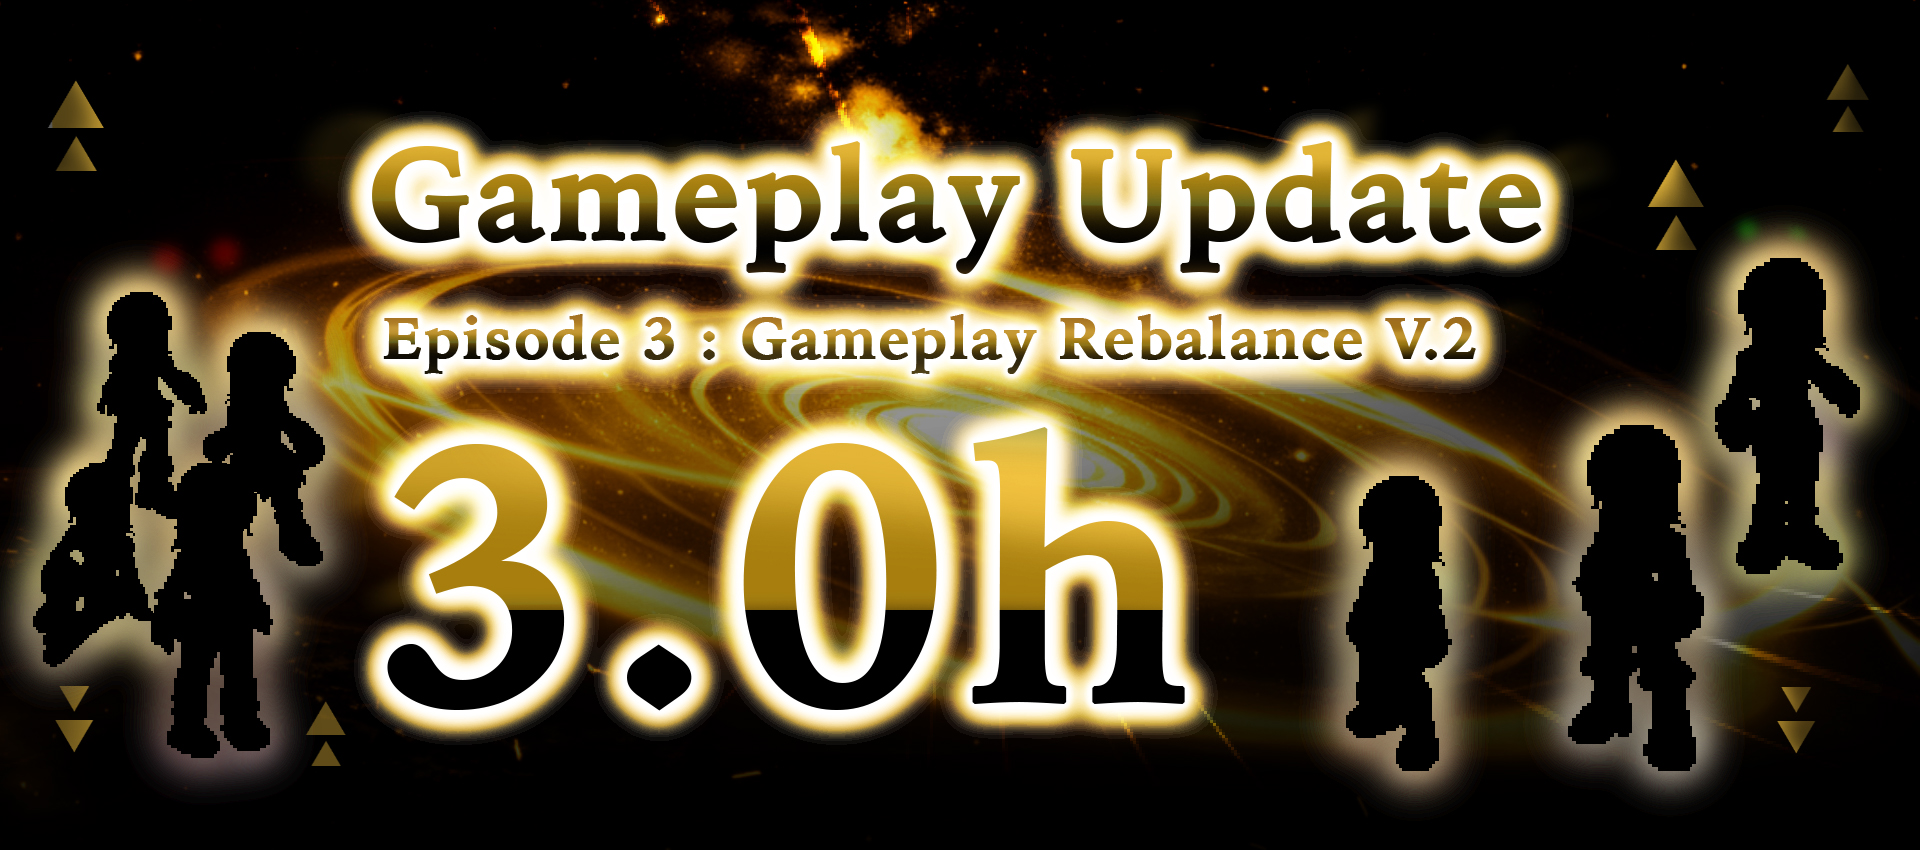 Gameplay Update 3.0h : Gameplay Rebalance V.2